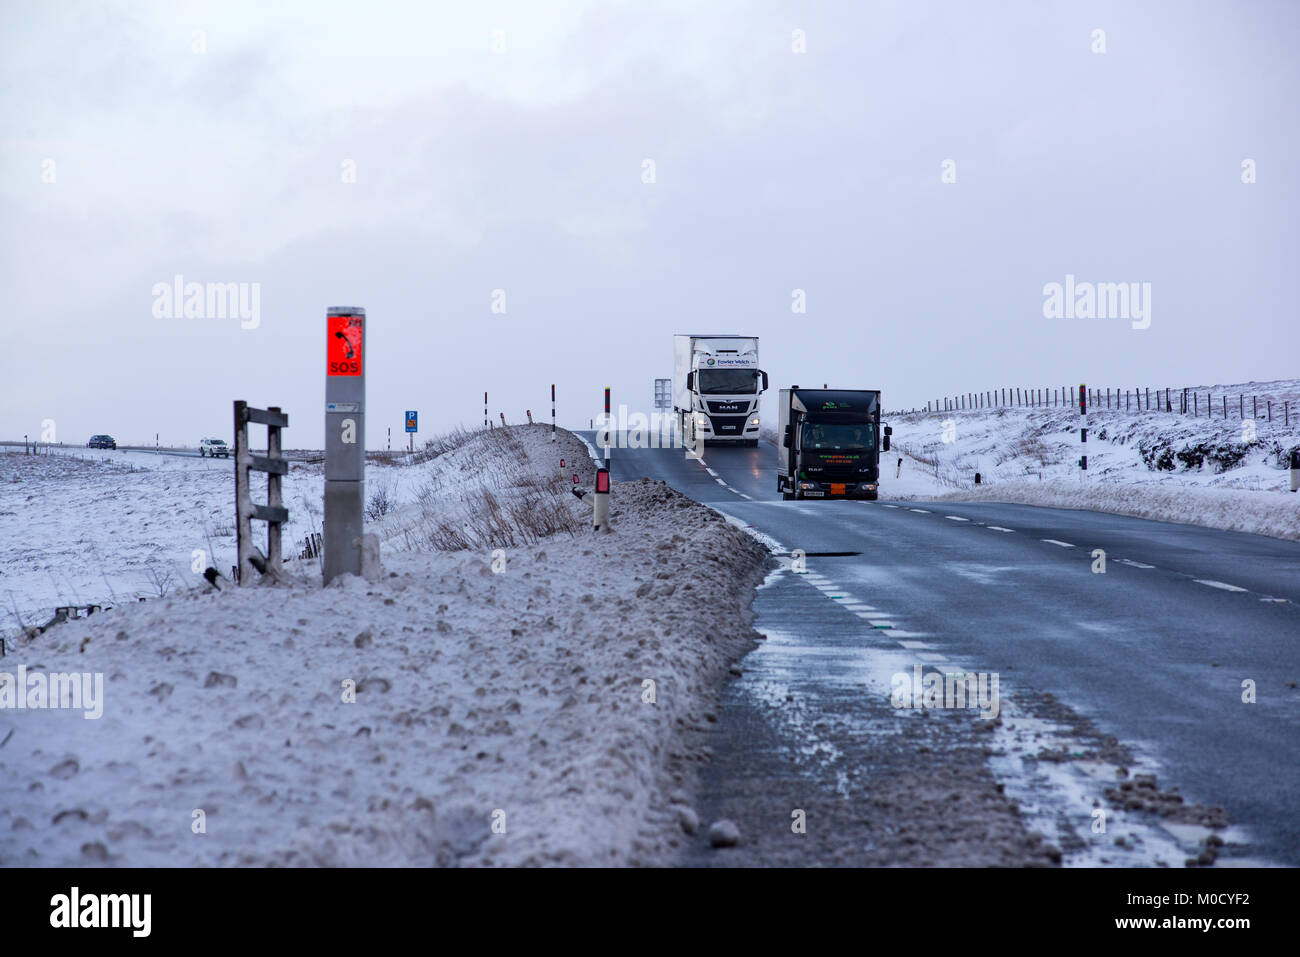 Les poids lourds, poids lourds sur l'A628 Woodhead transmettre un jour de neige sur le nord de l'Angleterre-trans Pennine Road, UK. Banque D'Images